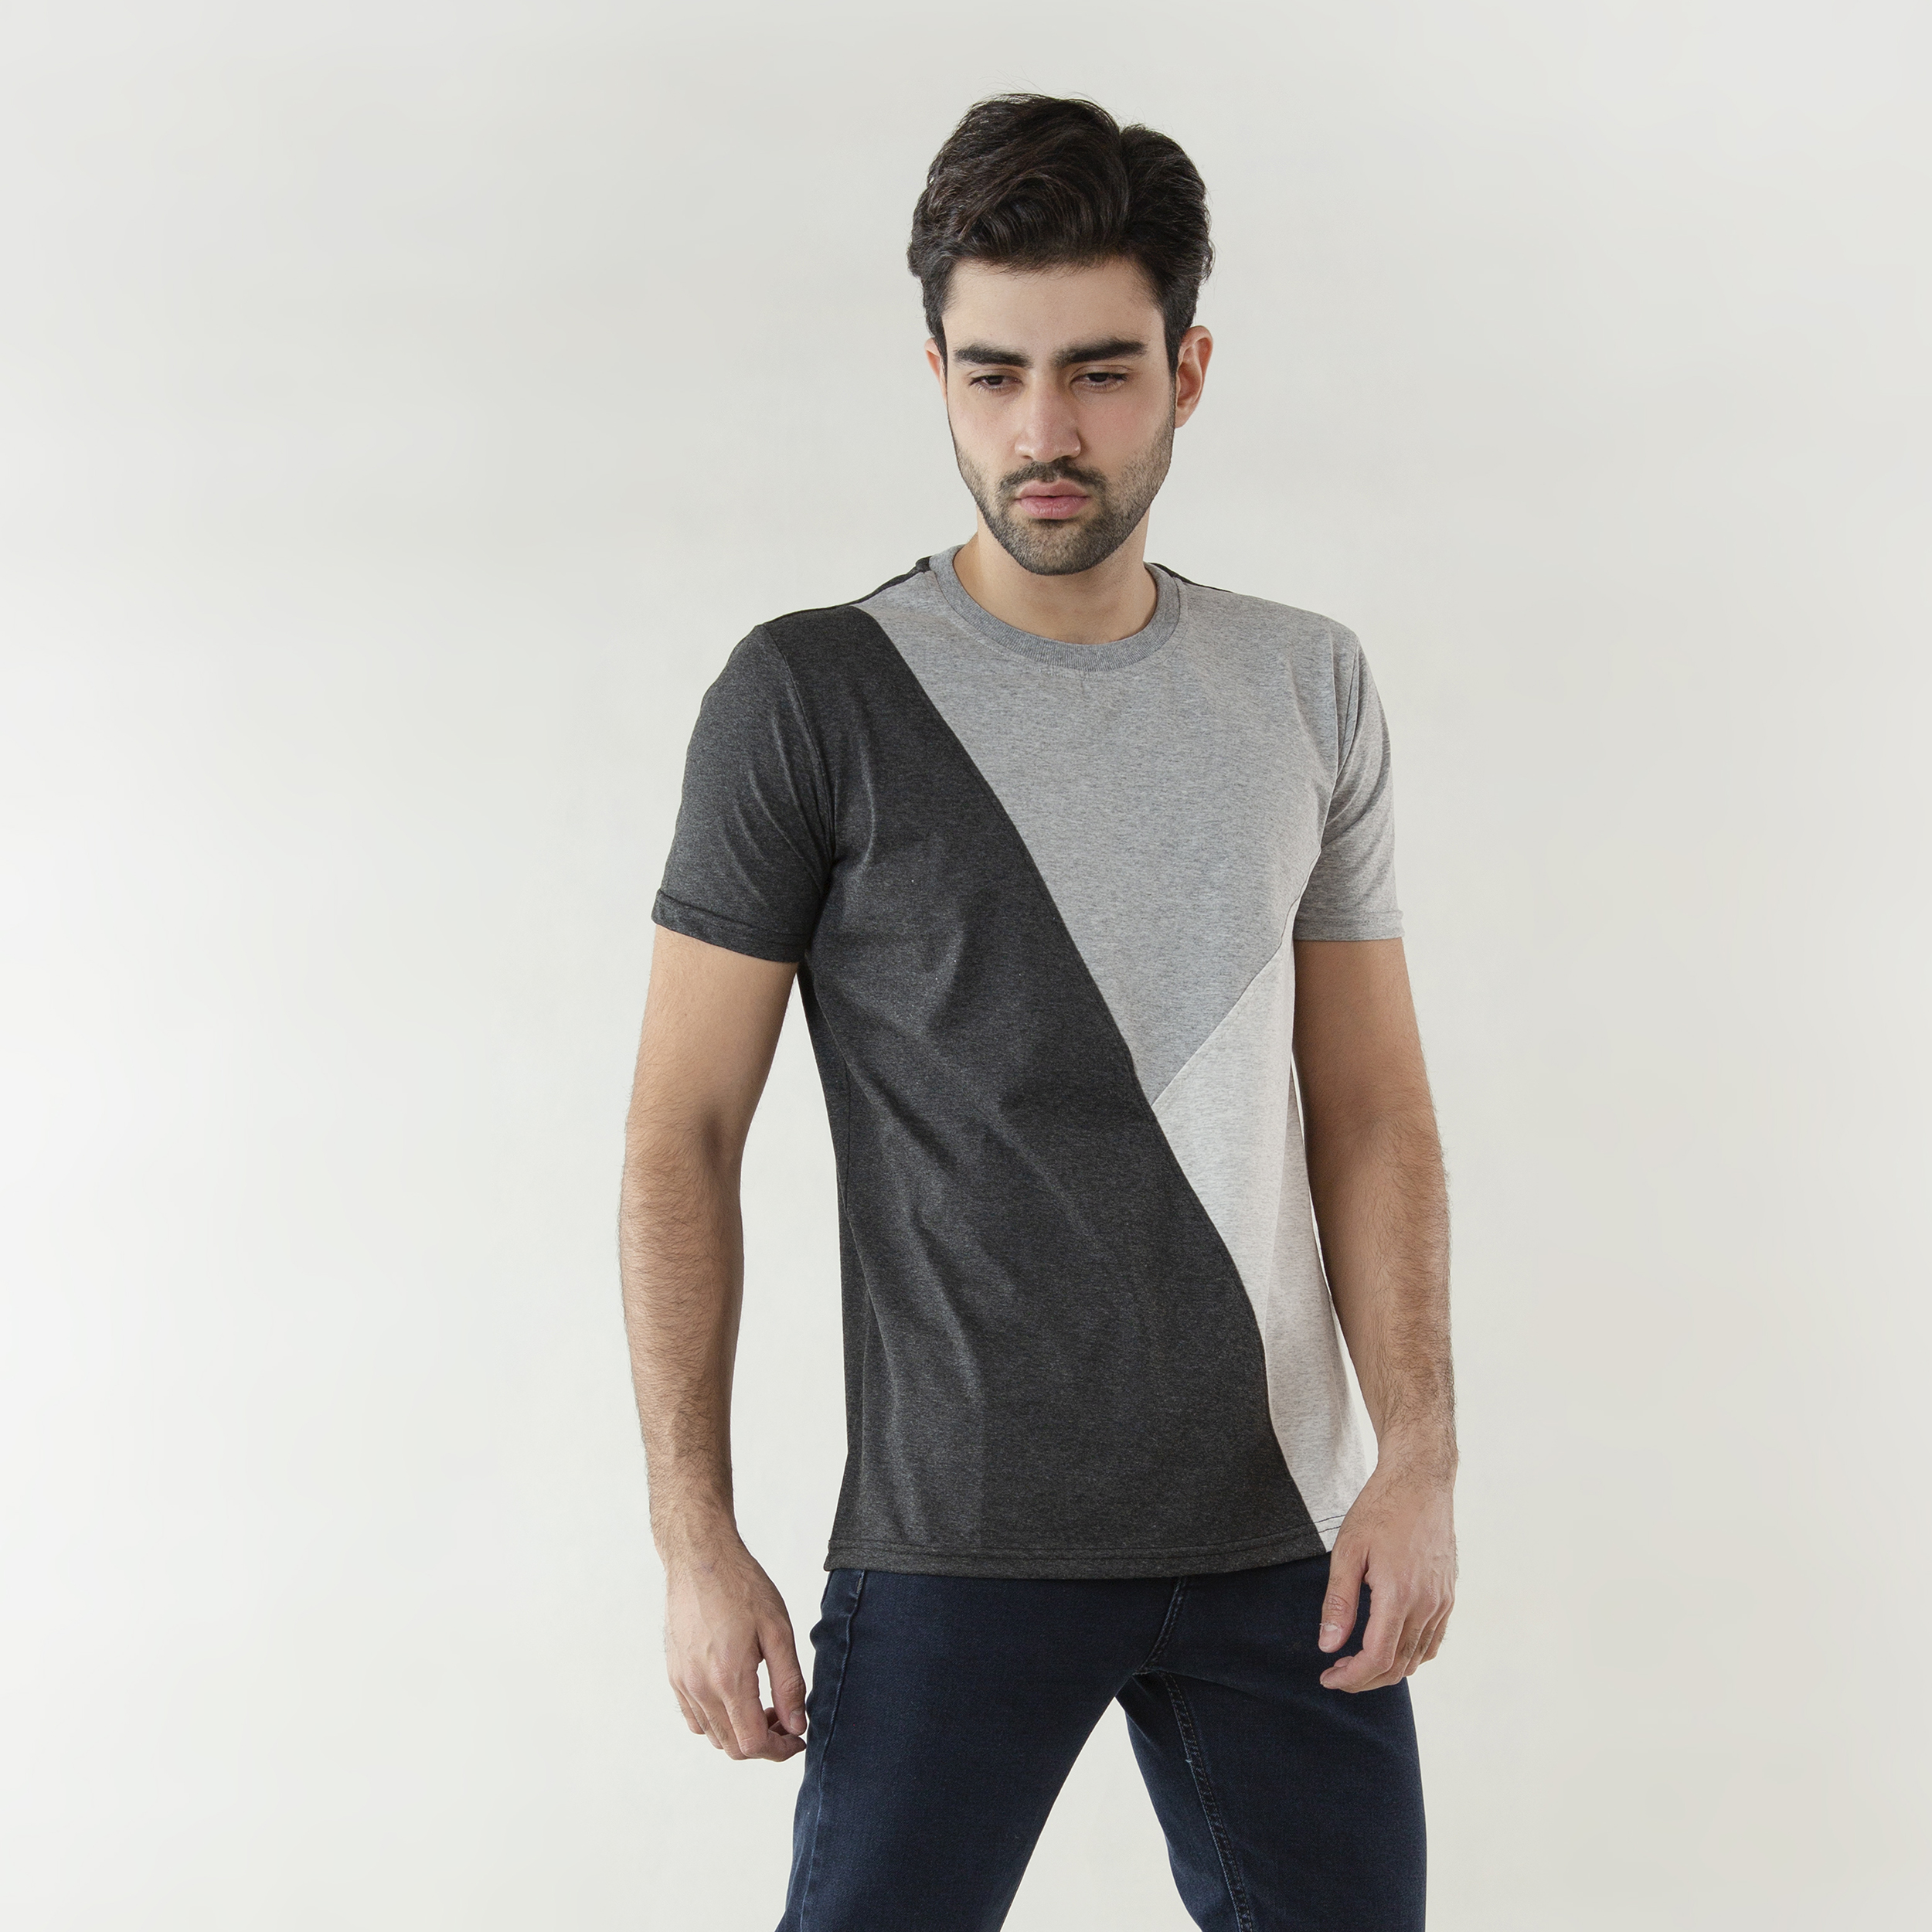 نقد و بررسی تی شرت مردانه کیکی رایکی مدل MBB2443-1 توسط خریداران